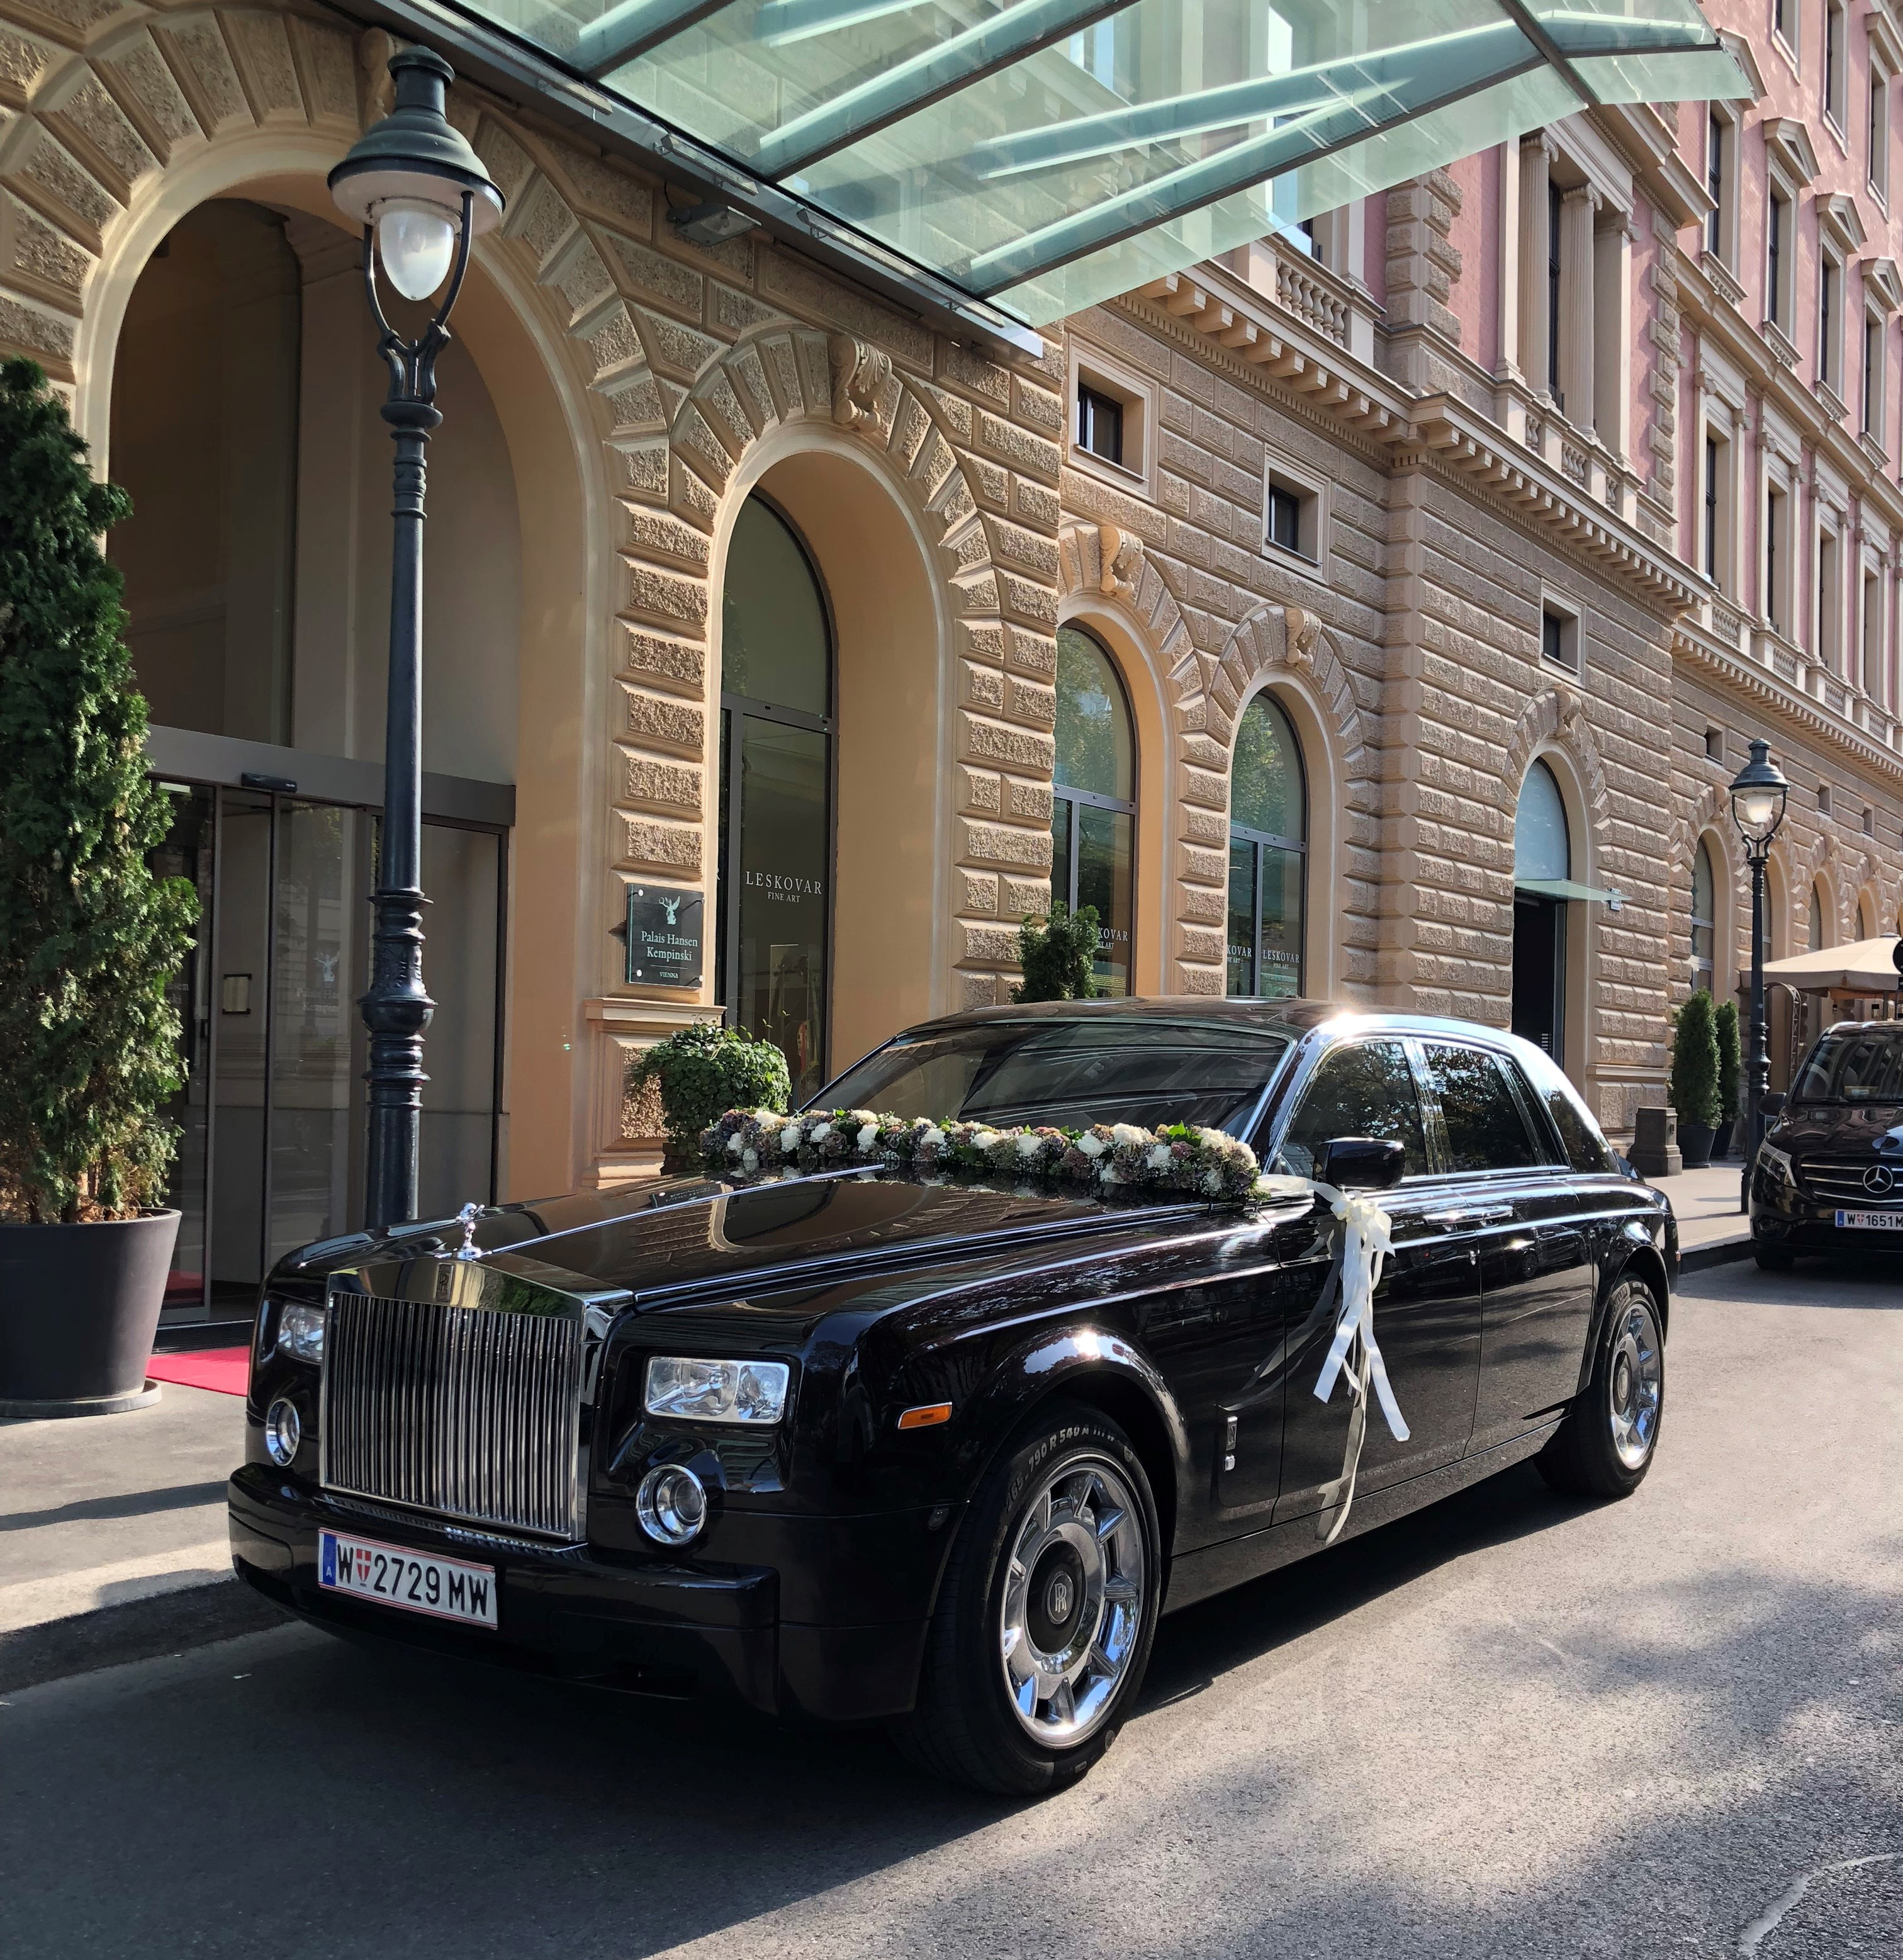 Rolls Royce Phantom mieten für Hochzeit bei E & M Limousinenservice